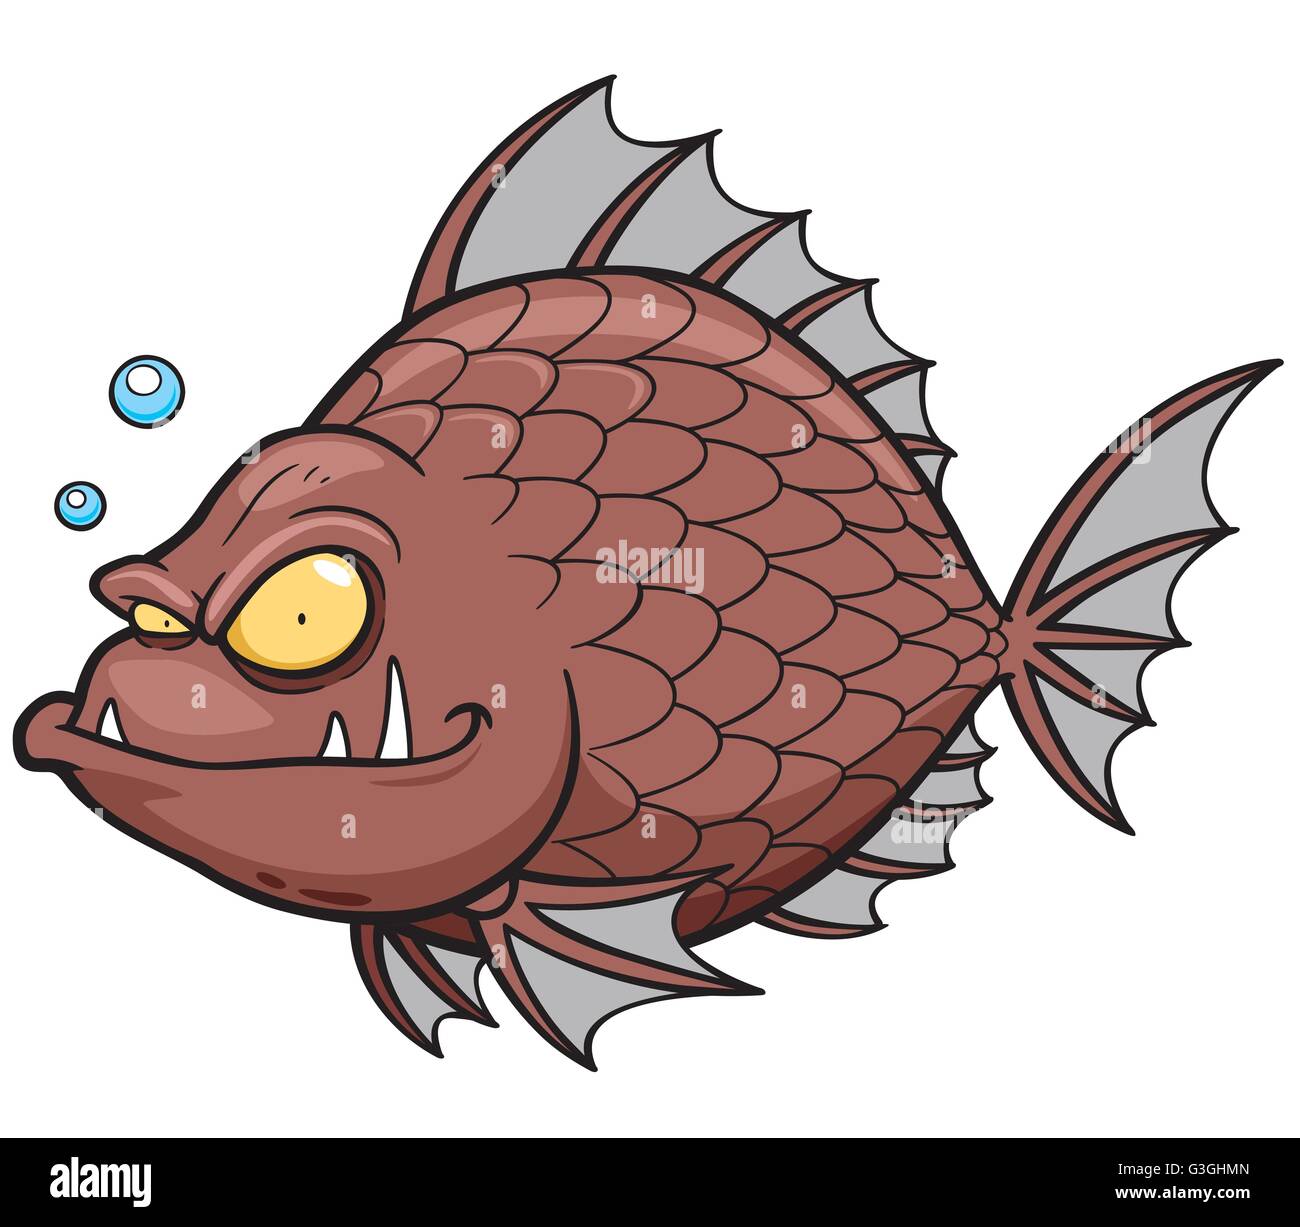 Vektor-Illustration von wütenden Cartoon Fisch Stock Vektor